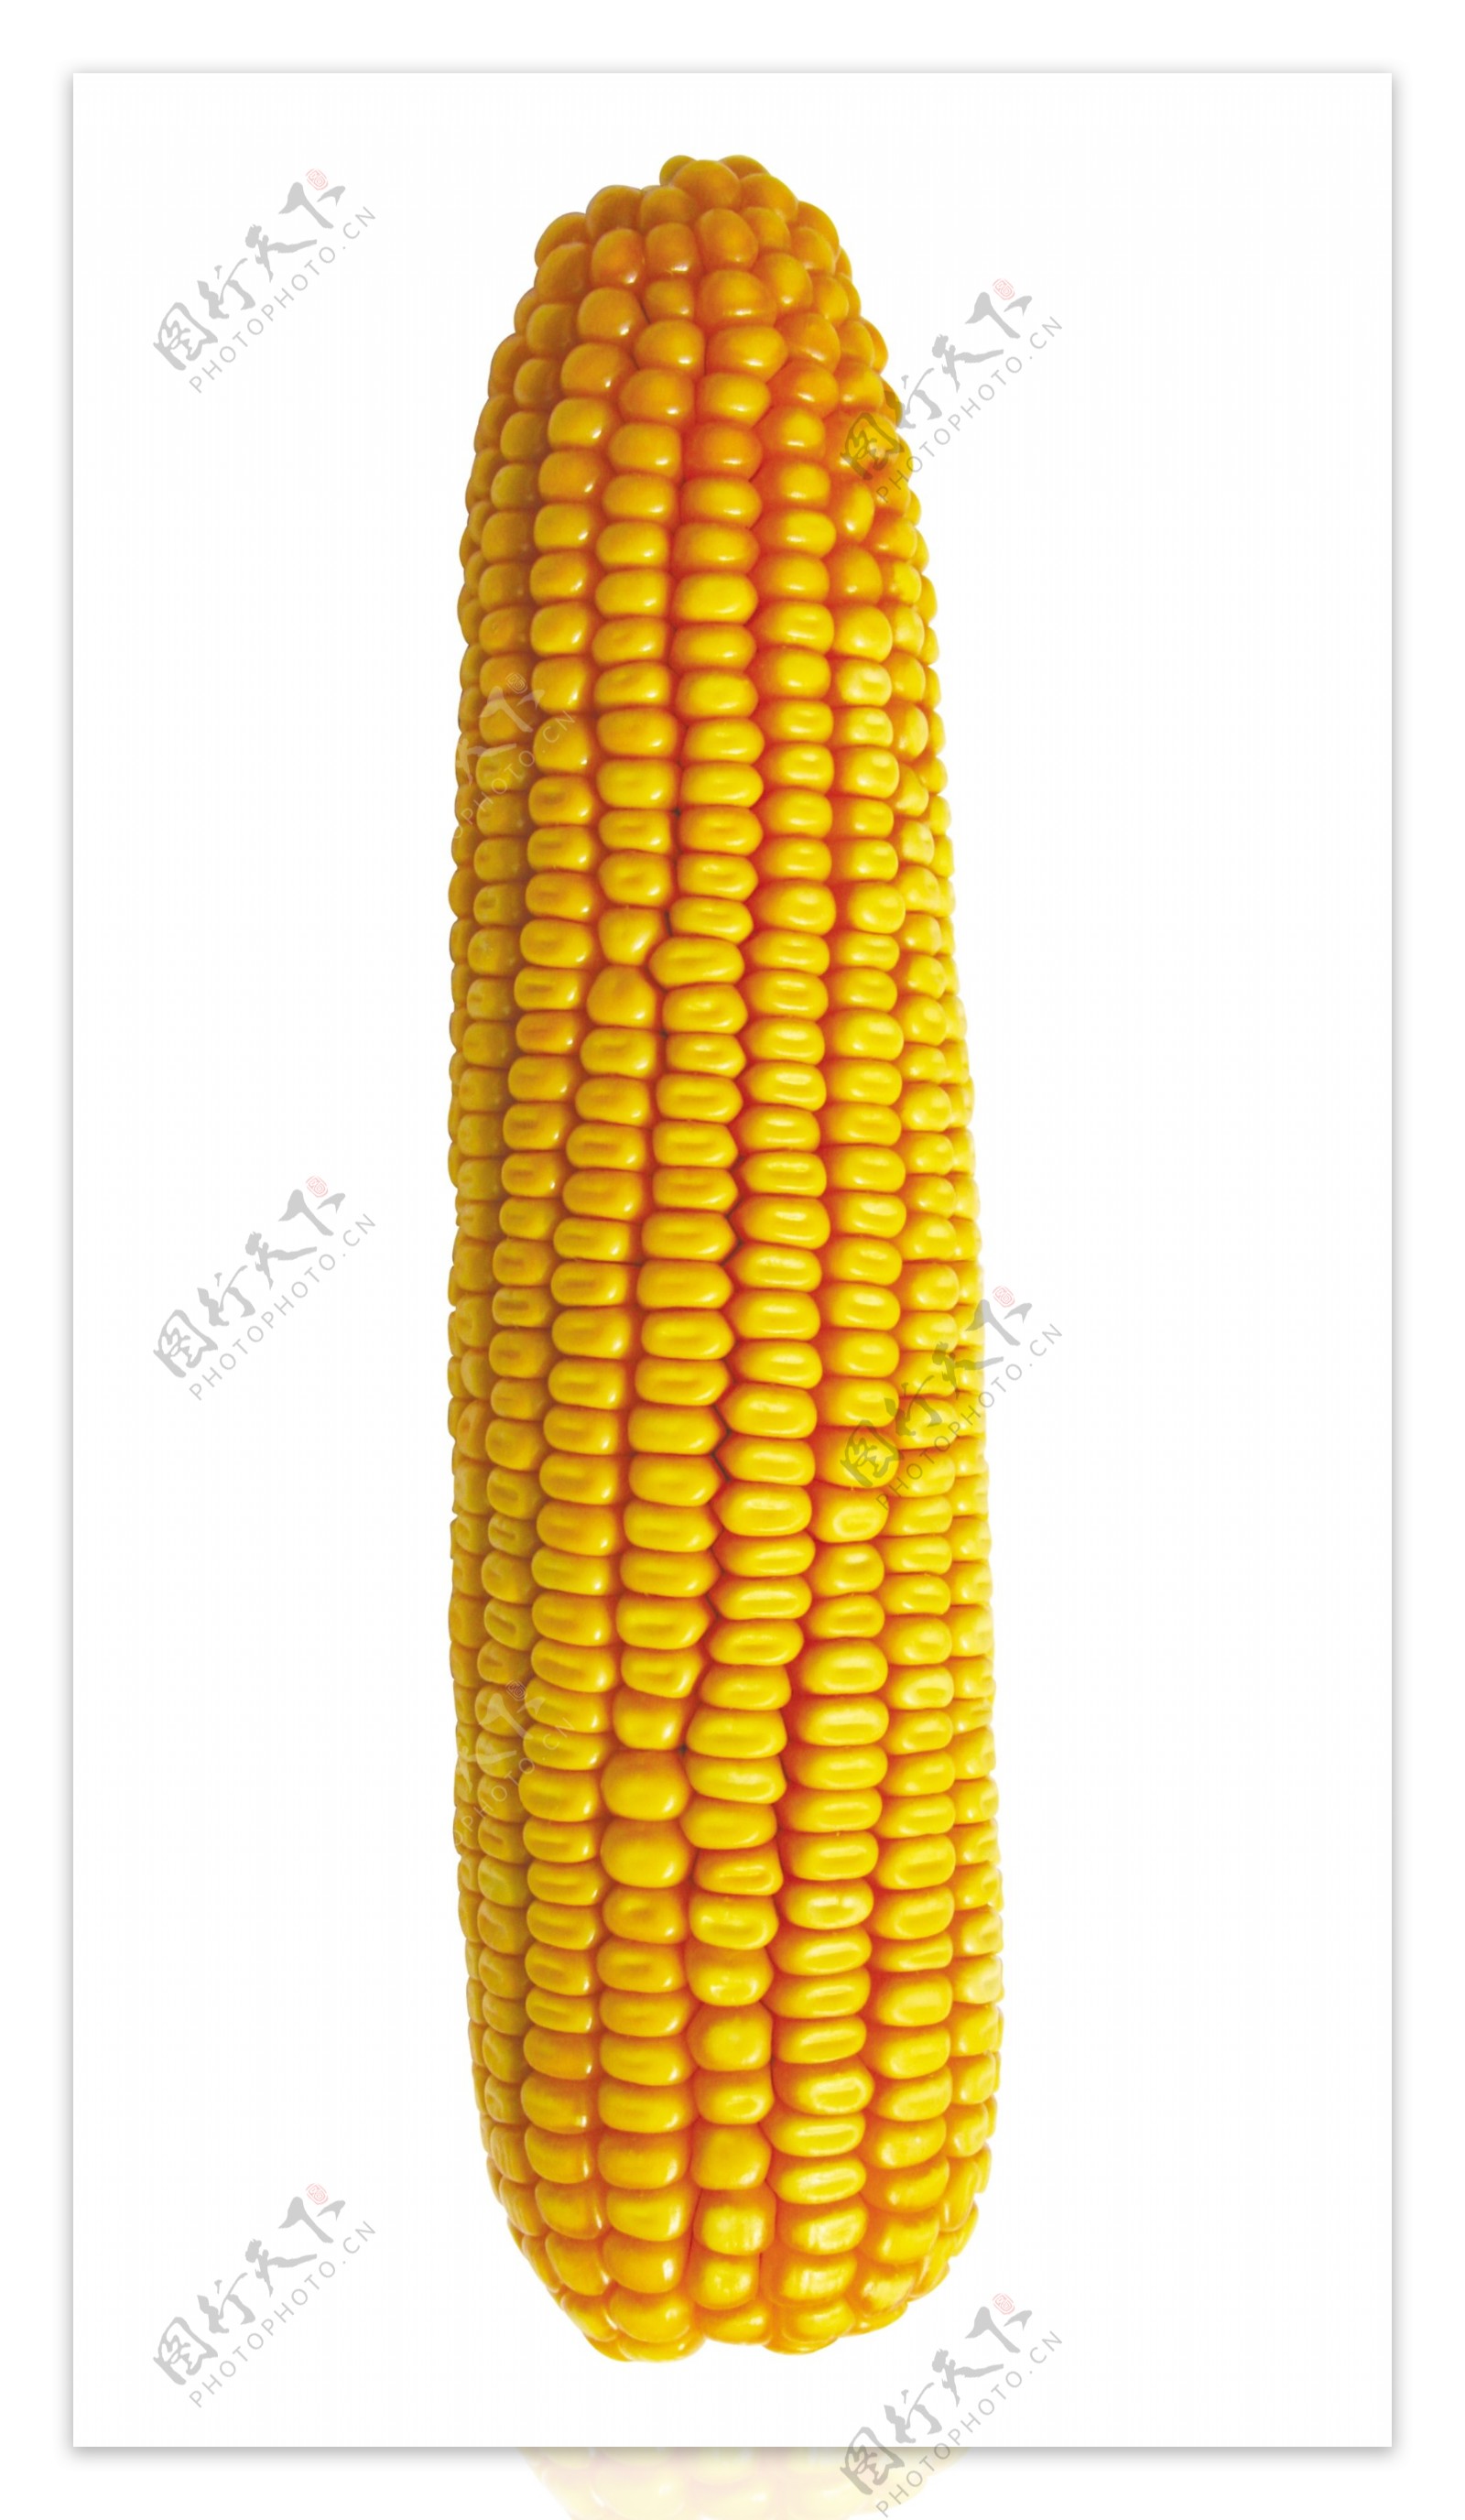 偃单8号玉米棒图片